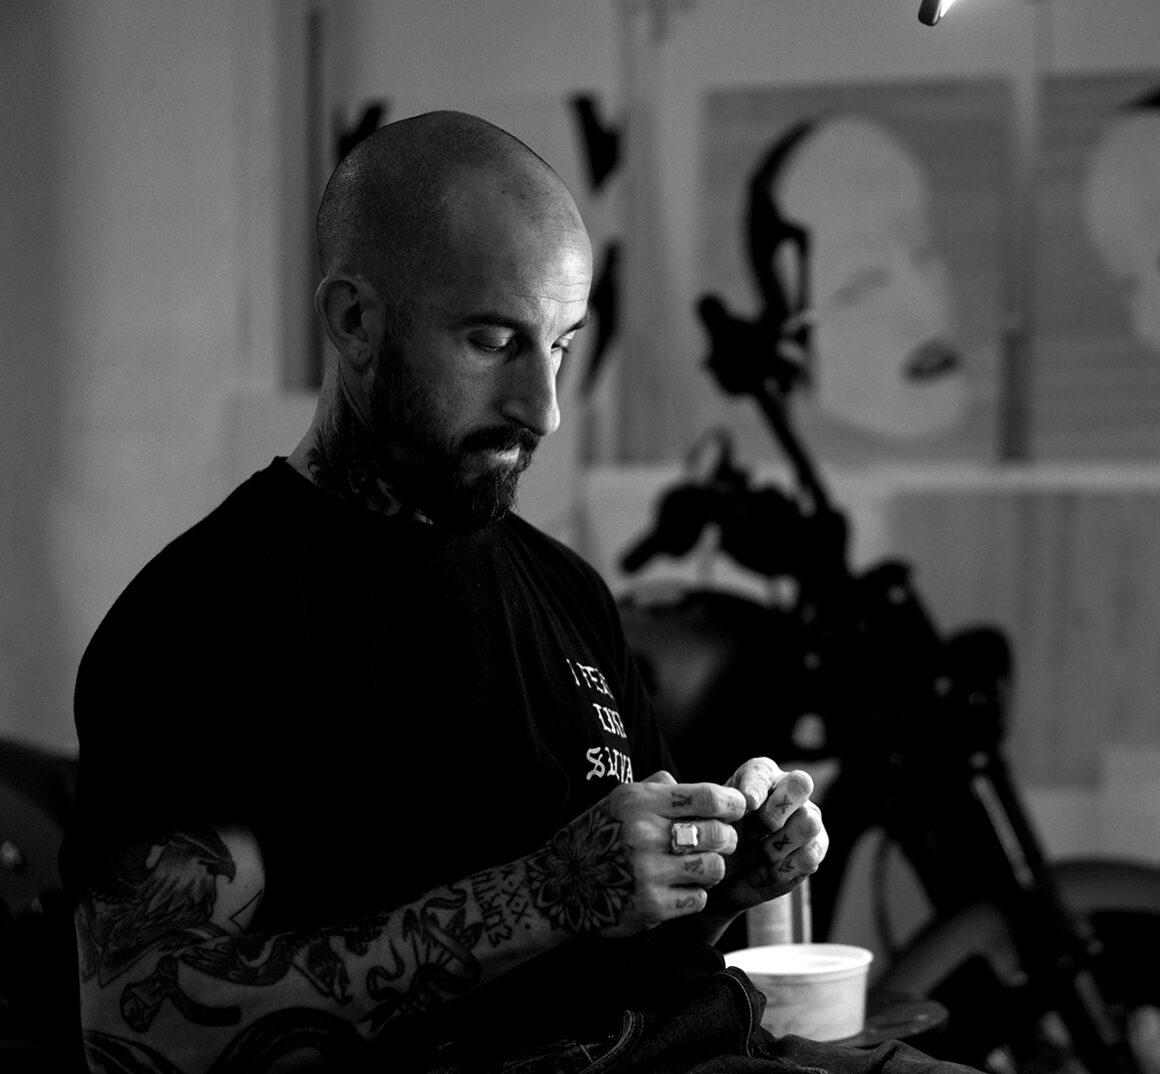 แรงบันดาลใจจากญี่ปุ่น และการเคลื่อนไหวที่สง่างามในเส้นสีดำในรอยสักของ Oscar  Hove - ลายสัก รอยสัก ช่างสัก ร้านสัก tattoo